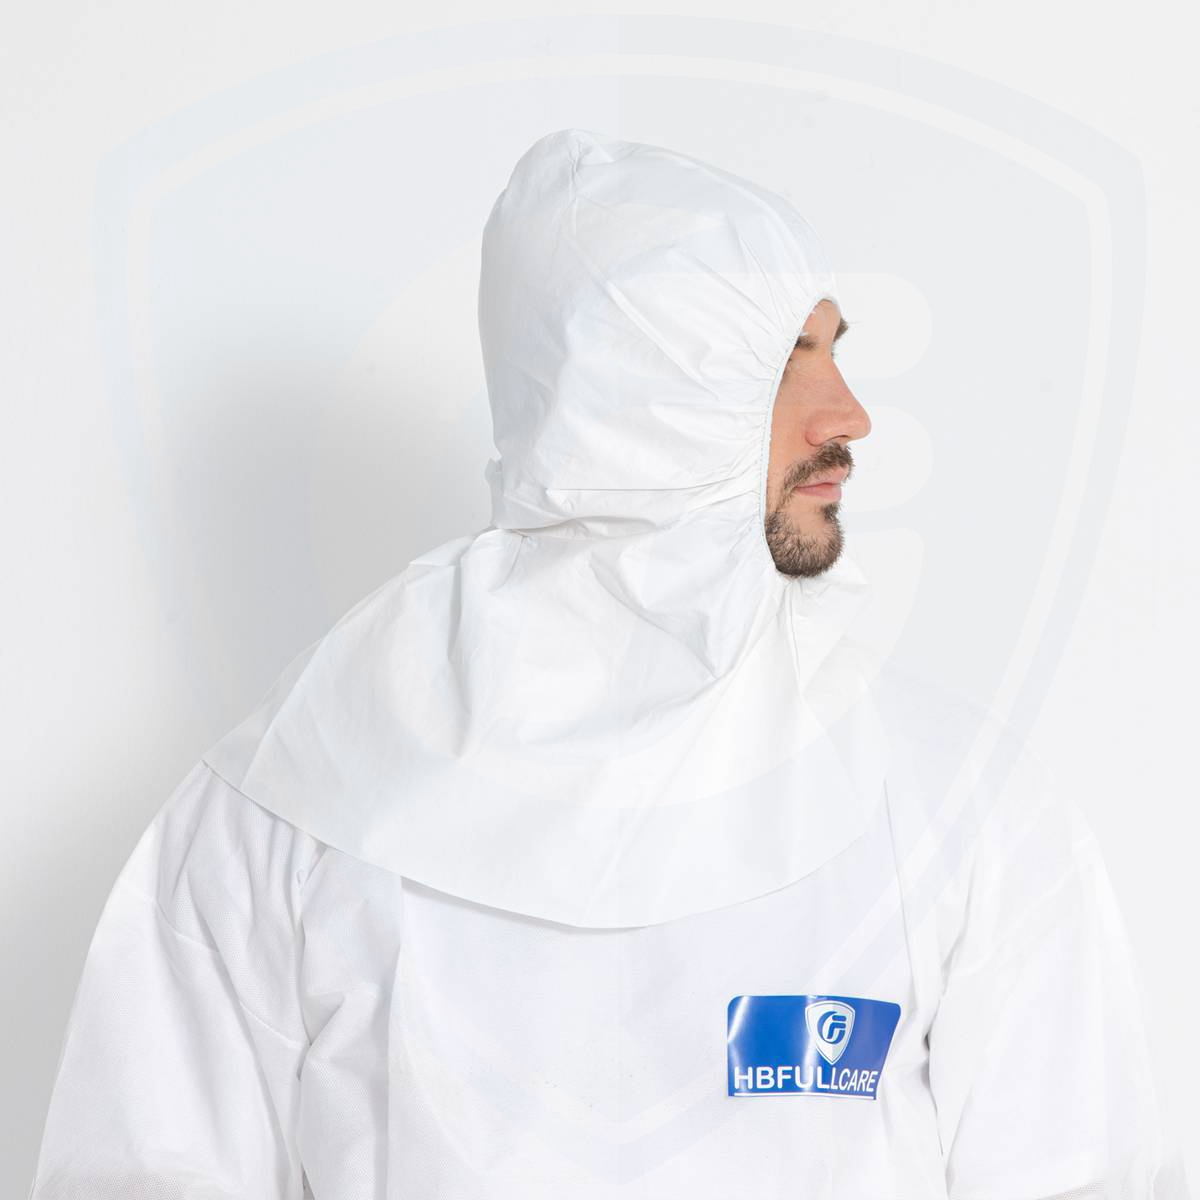 Günstiger Preis Einweg-Astronautenkappe ohne Maske für die persönliche Sicherheit